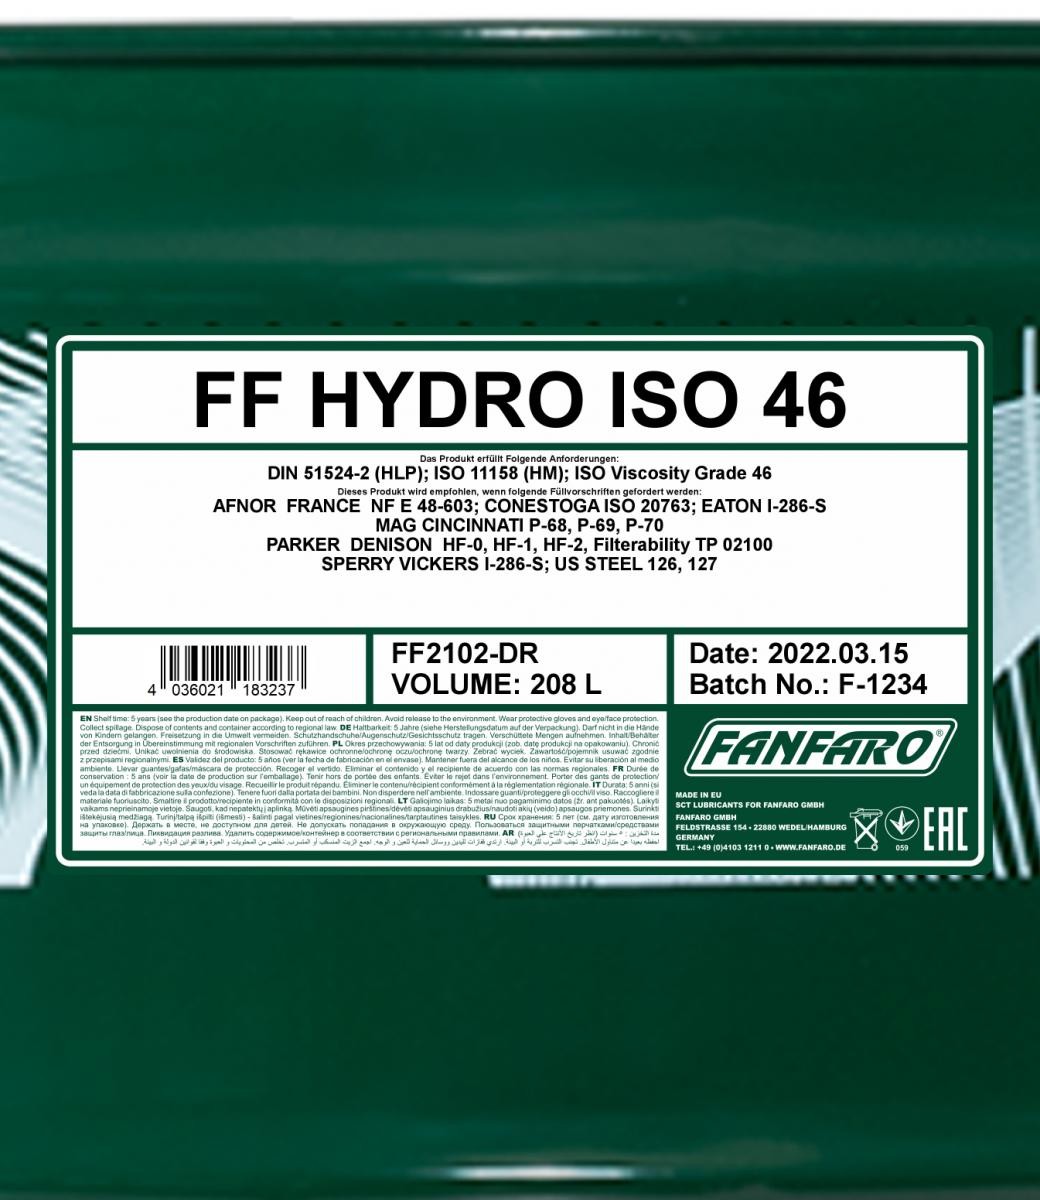 FANFARO Hydraulic fluid FF2102-DR